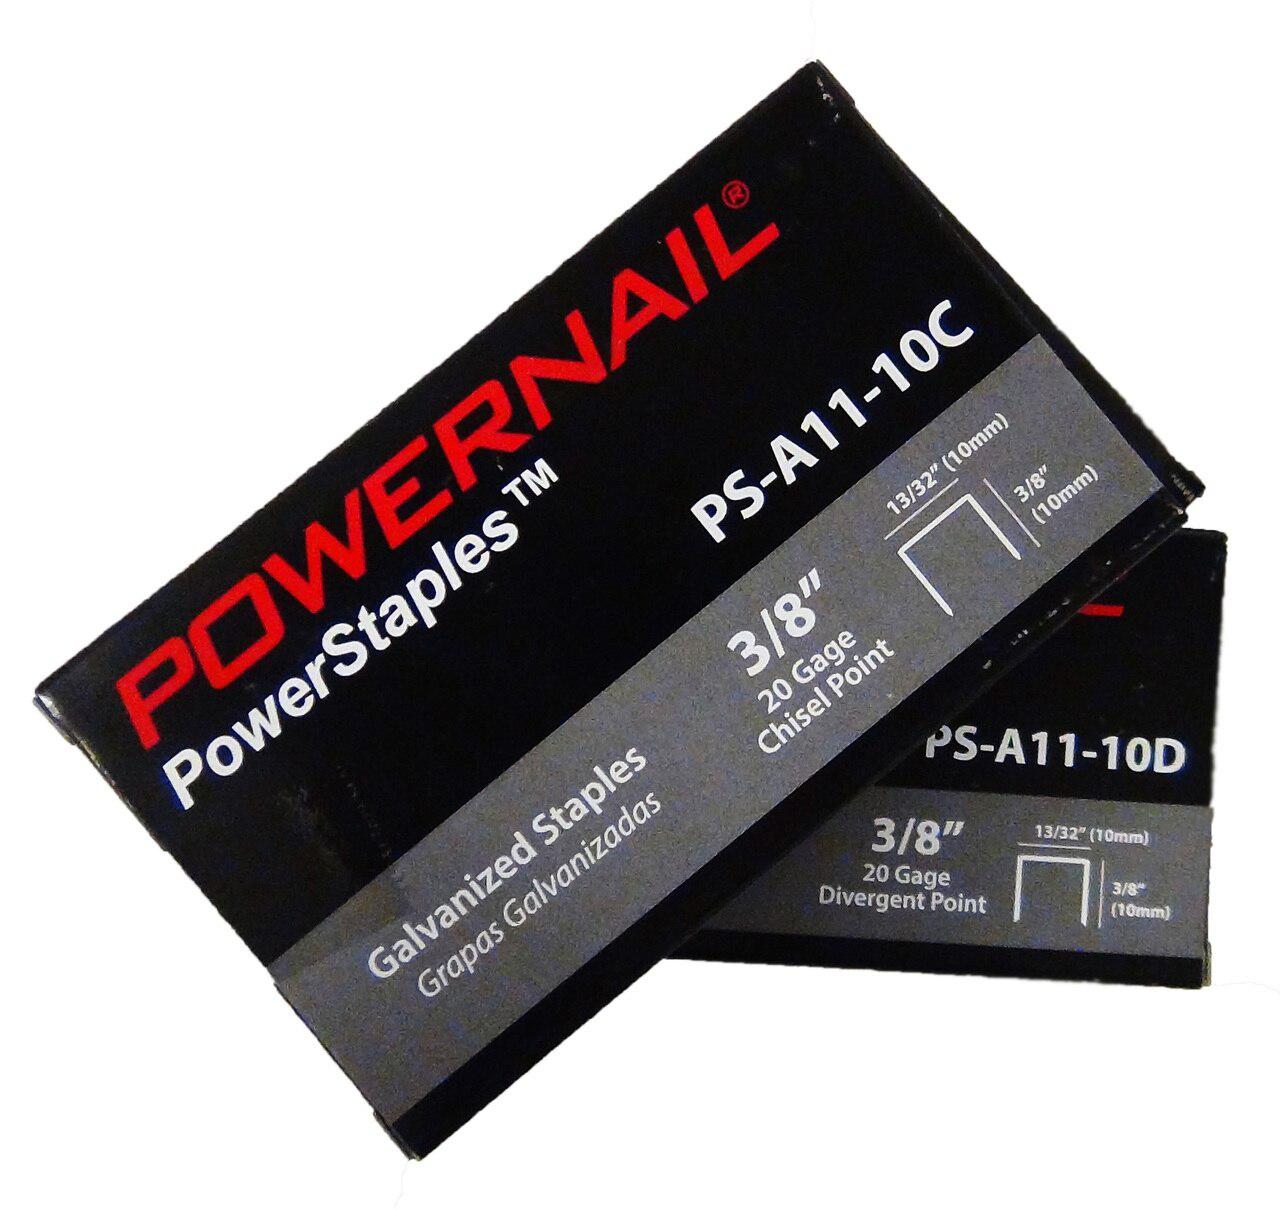 Powernail PS-5010D 5-16" Divergent Point Staples (5,000-box)